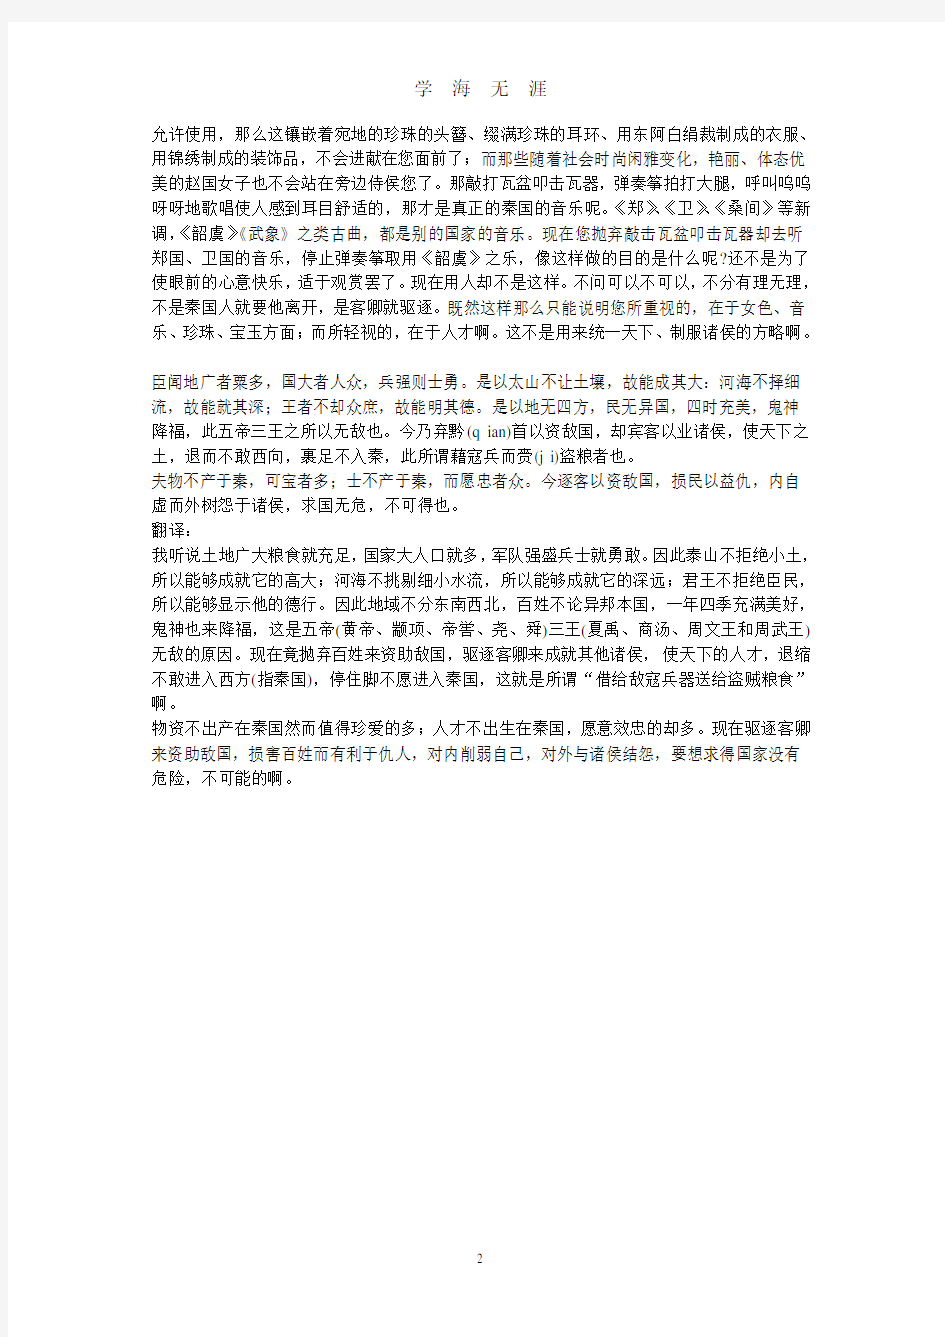 谏逐客书原文及翻译(2020年7月整理).pdf